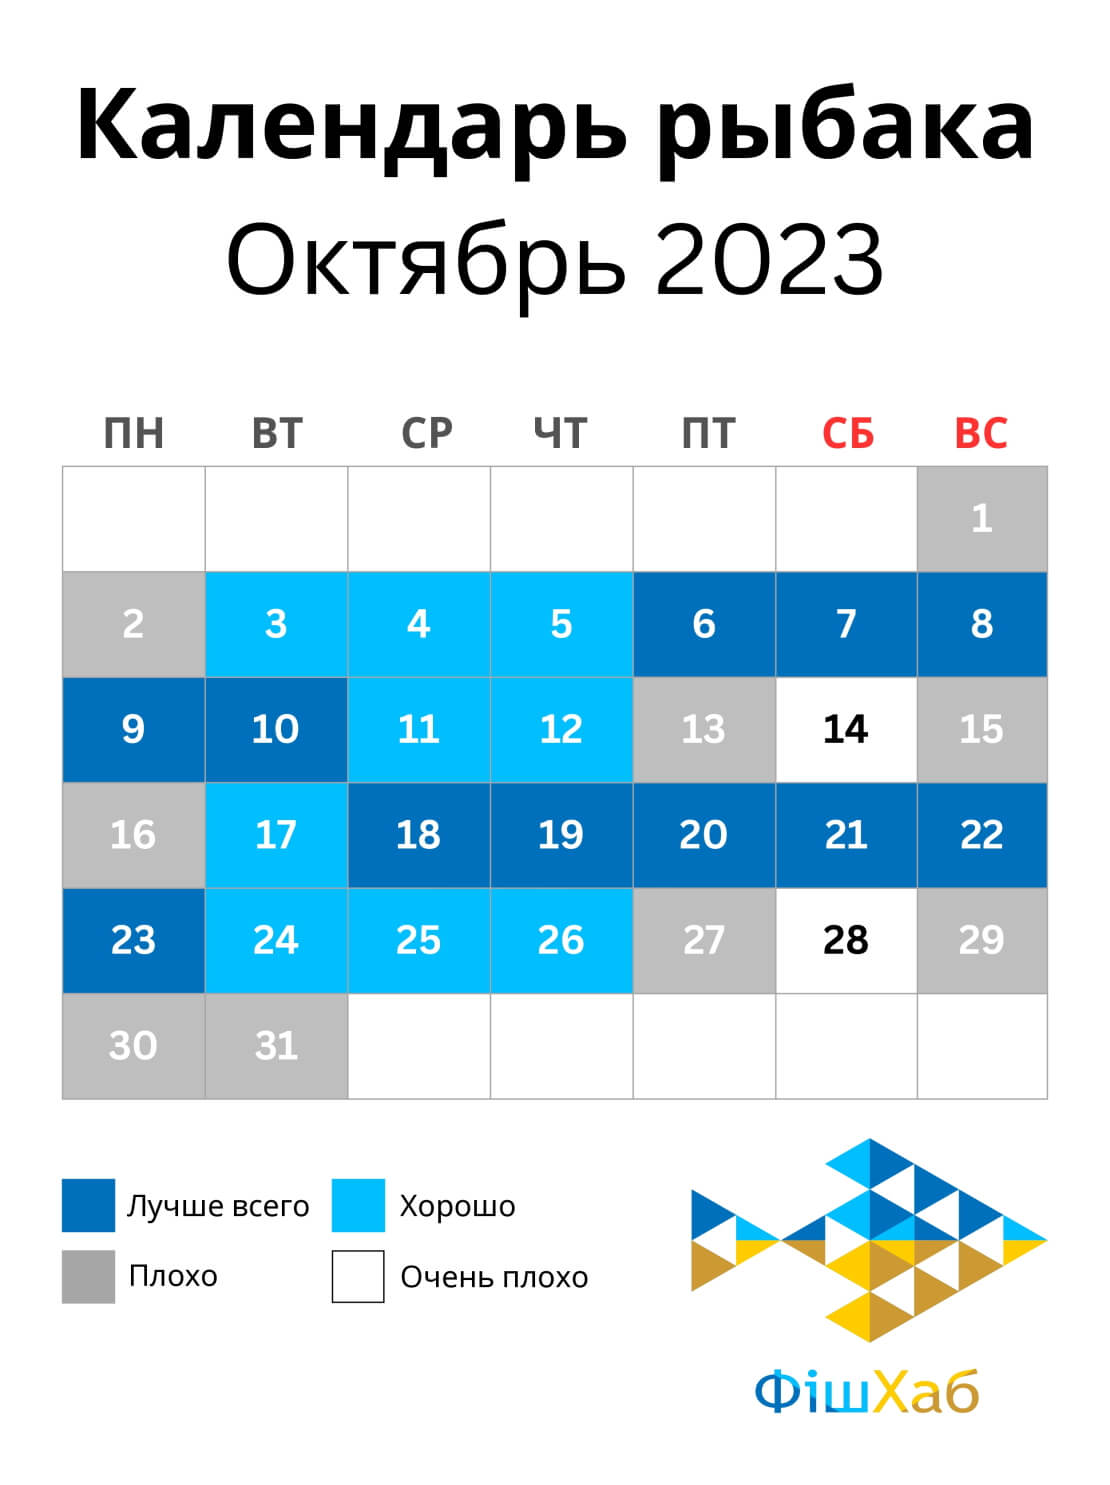 Календарь рыбака на октябрь 2023 года | ФішХаб